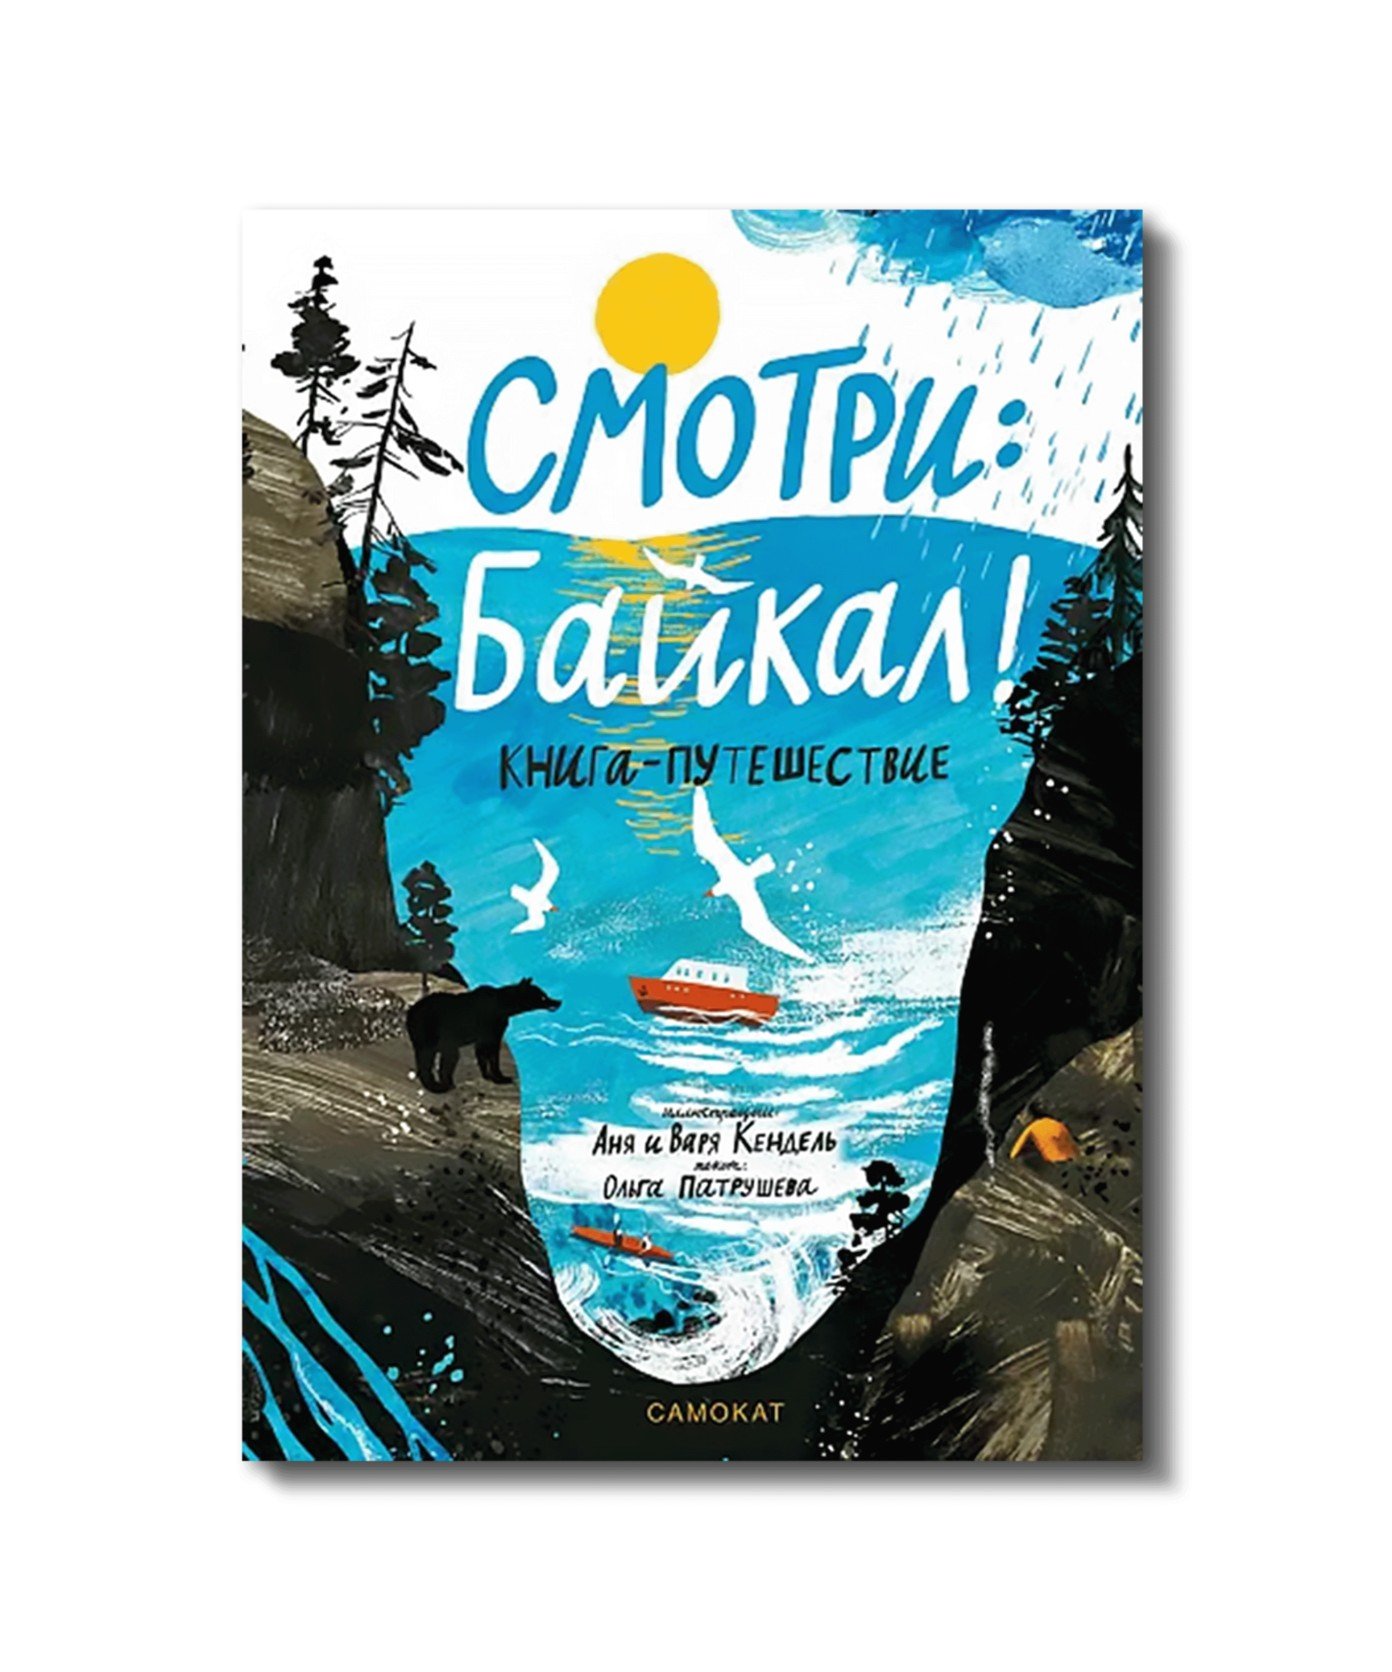 Смотри: Байкал! Книга-путешествие